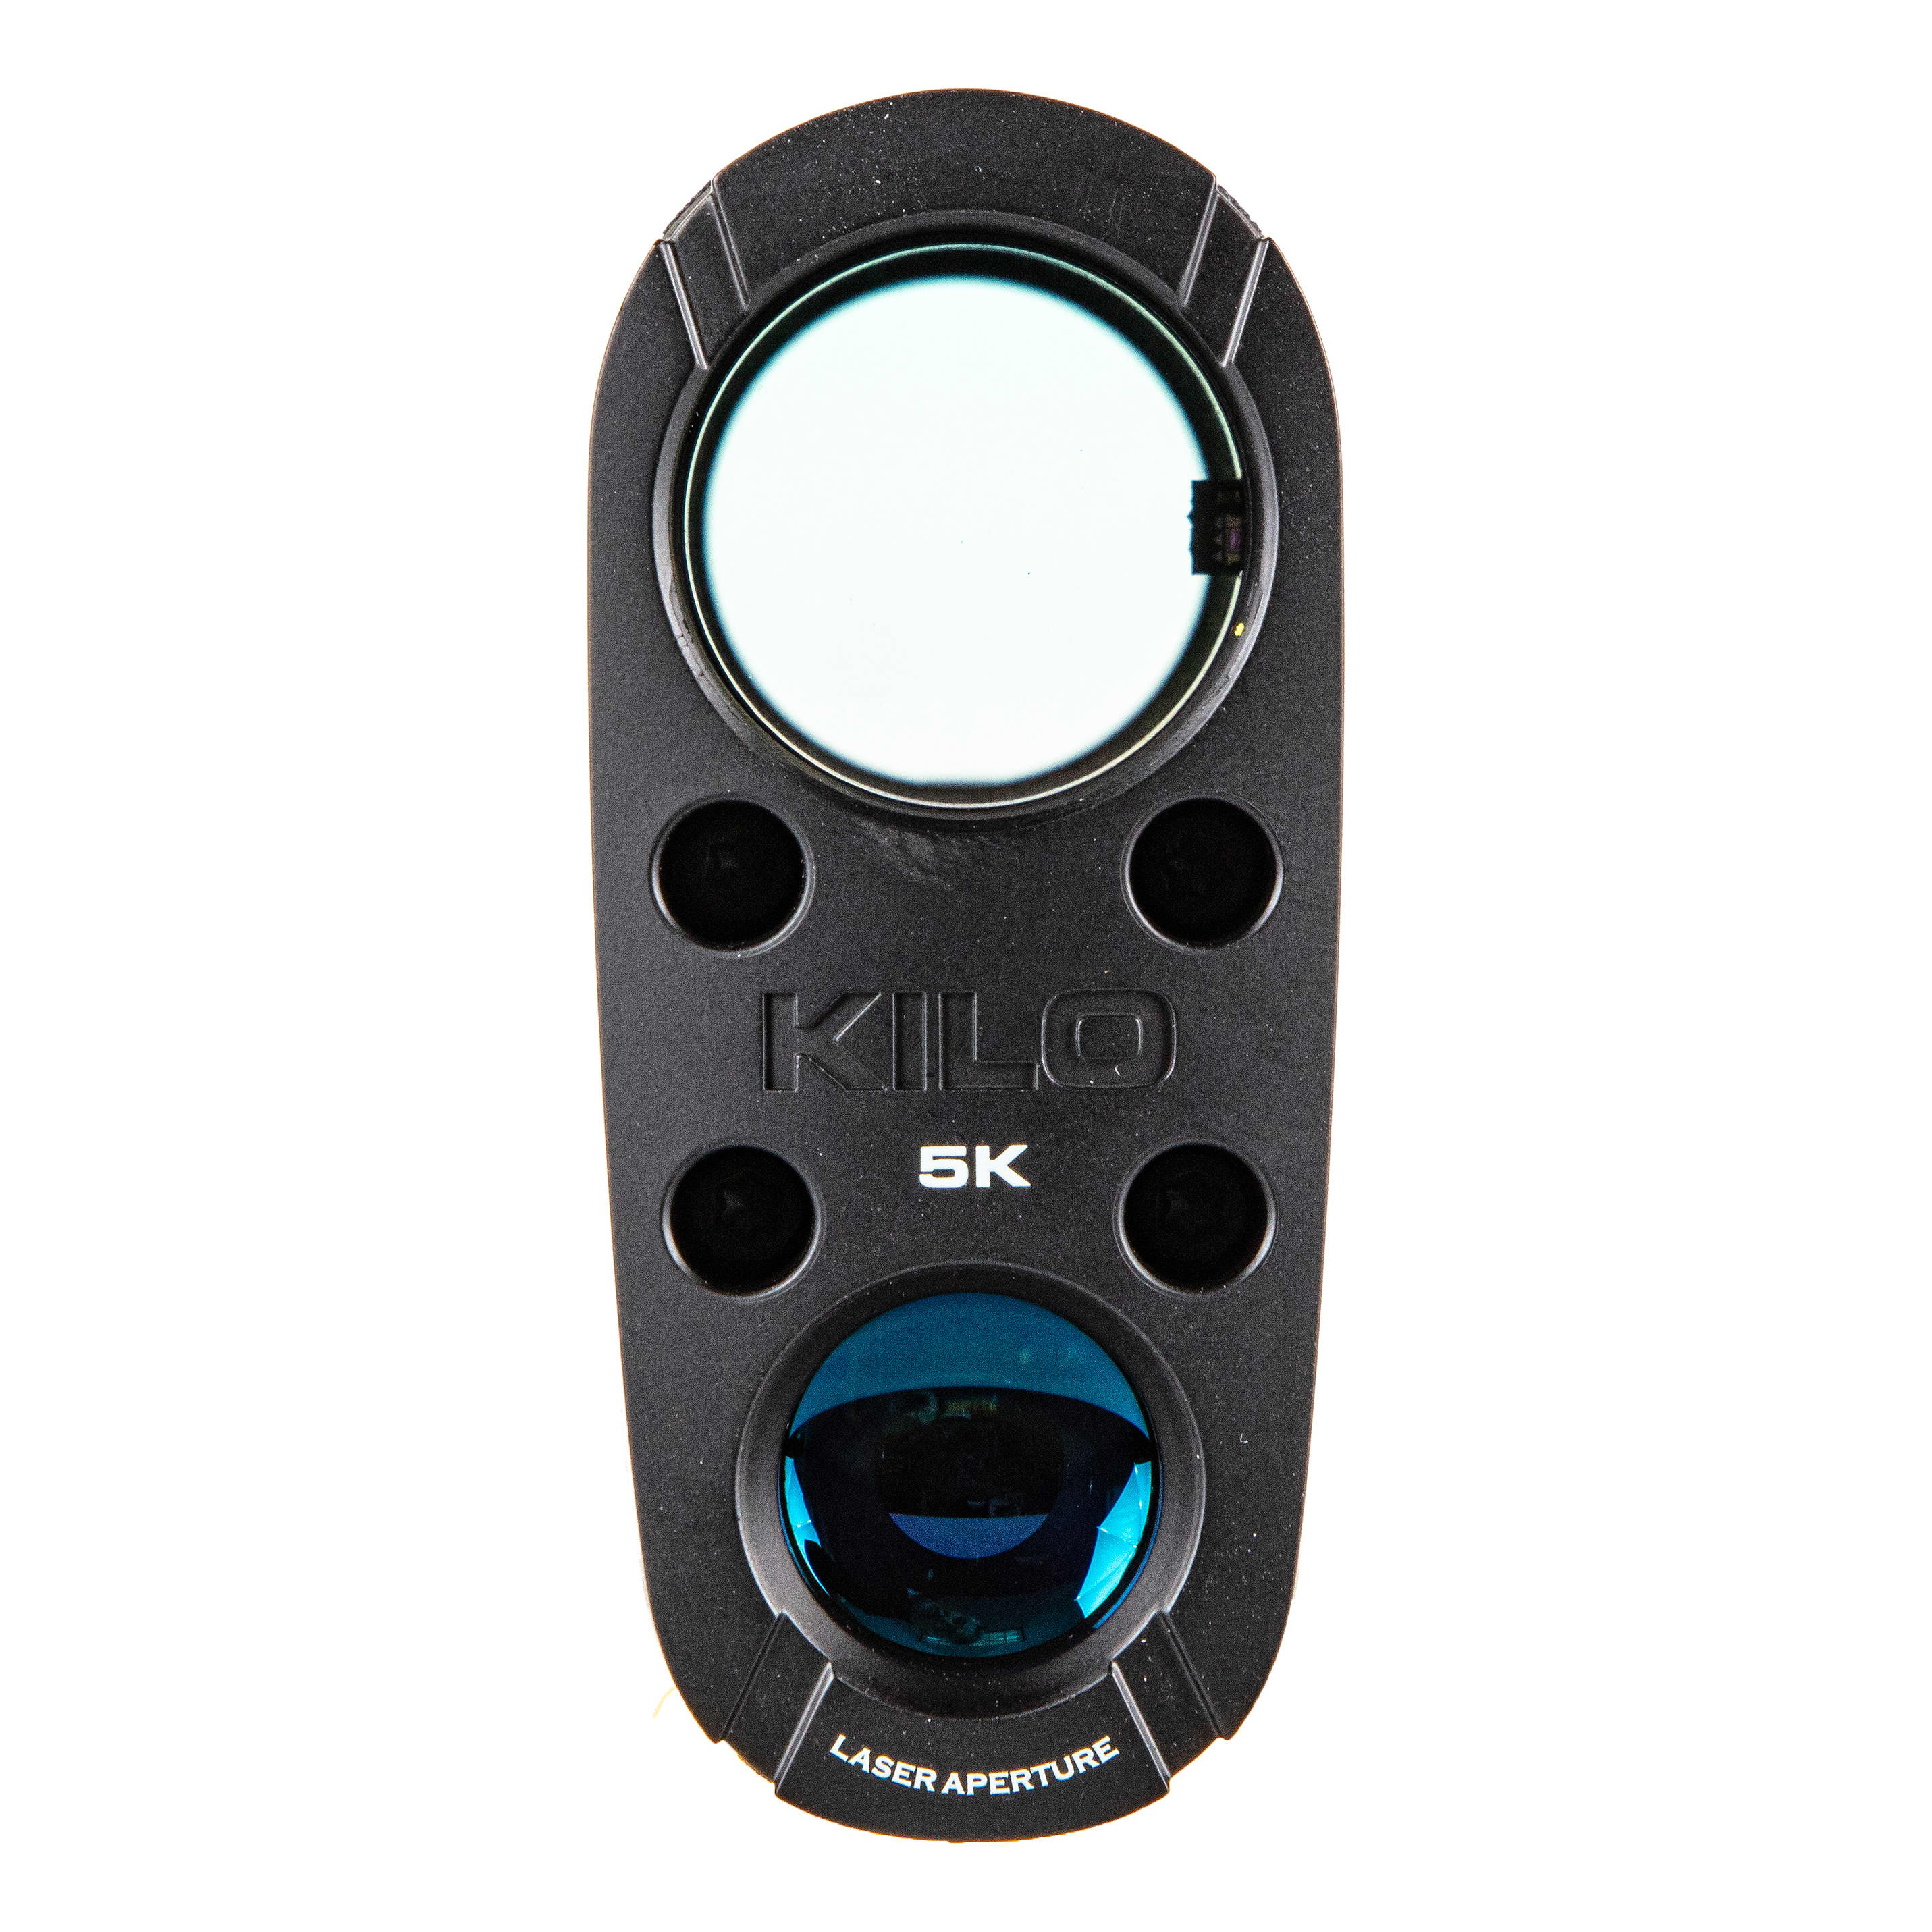 SIG Sauer® KILO5K Rangefinder